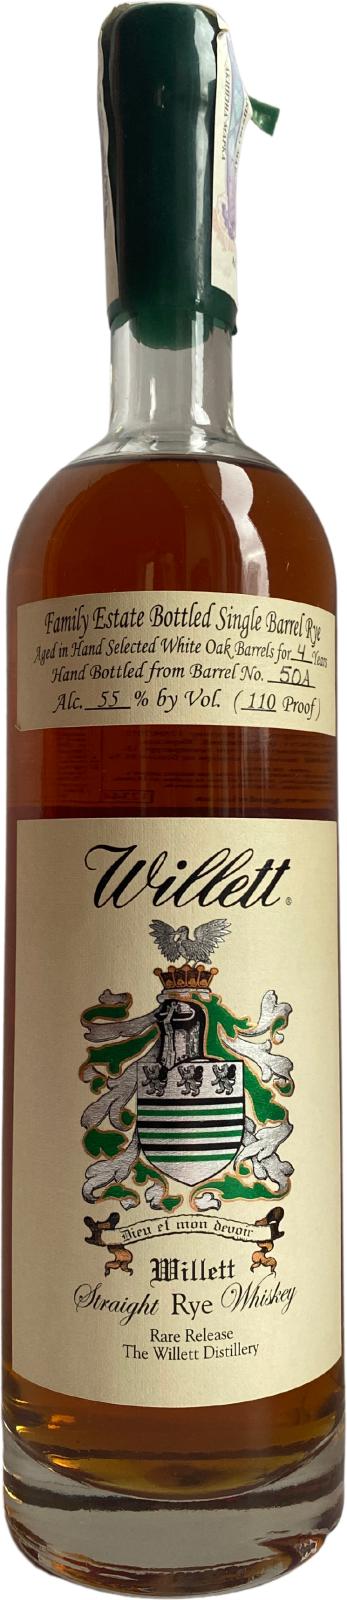 Willett 4yo White Oak Barrel 55% 750ml